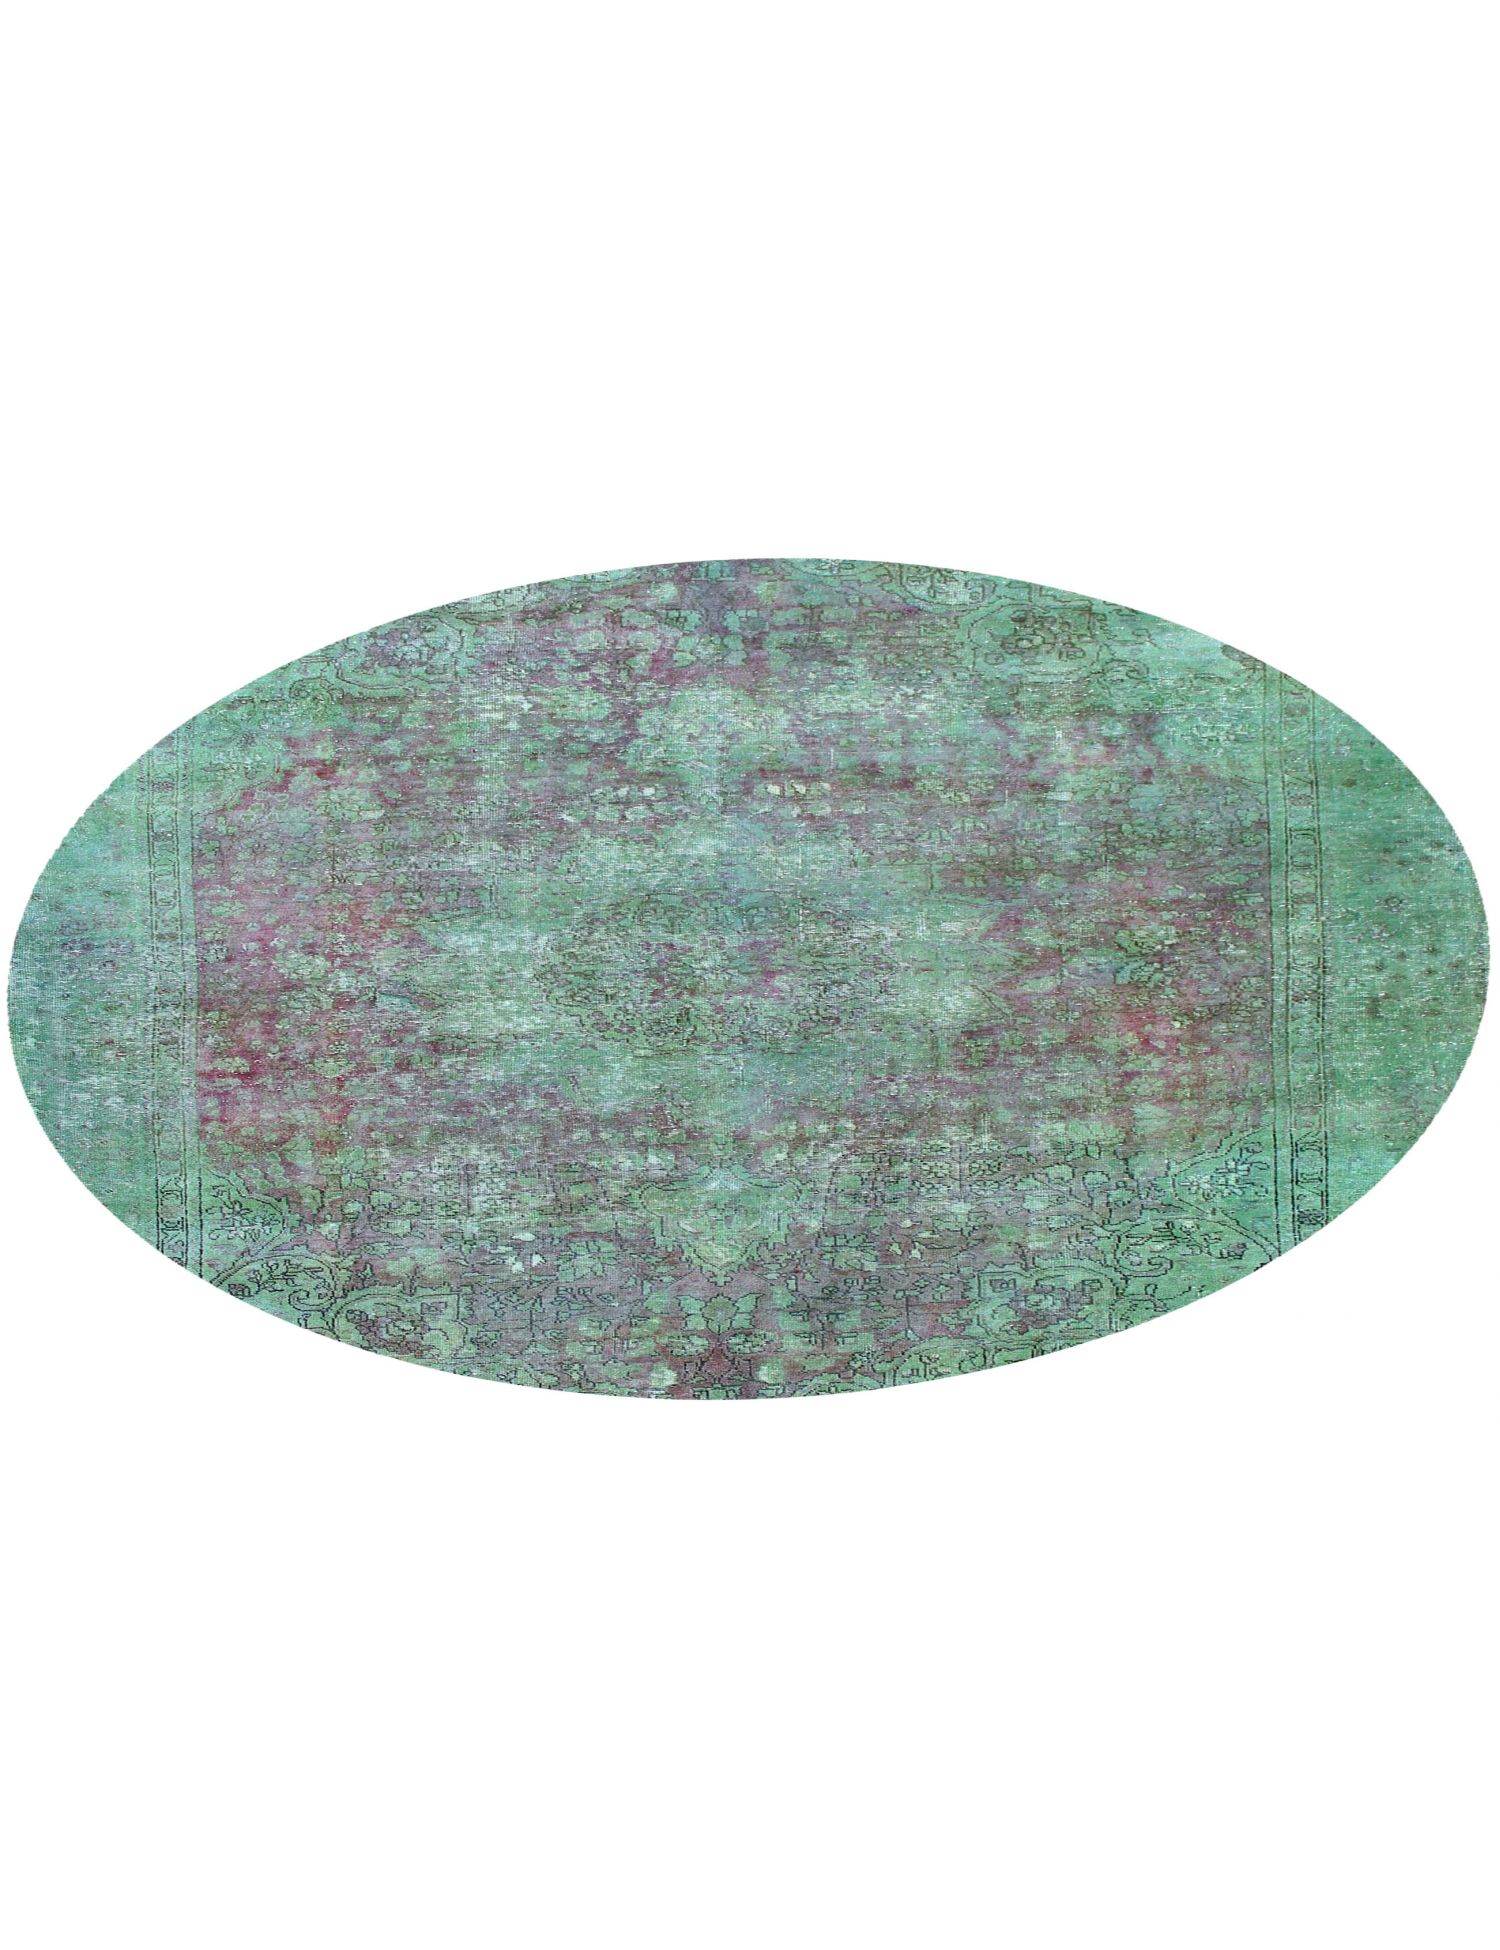 Rund  Vintage Teppich  grün <br/>230 x 230 cm